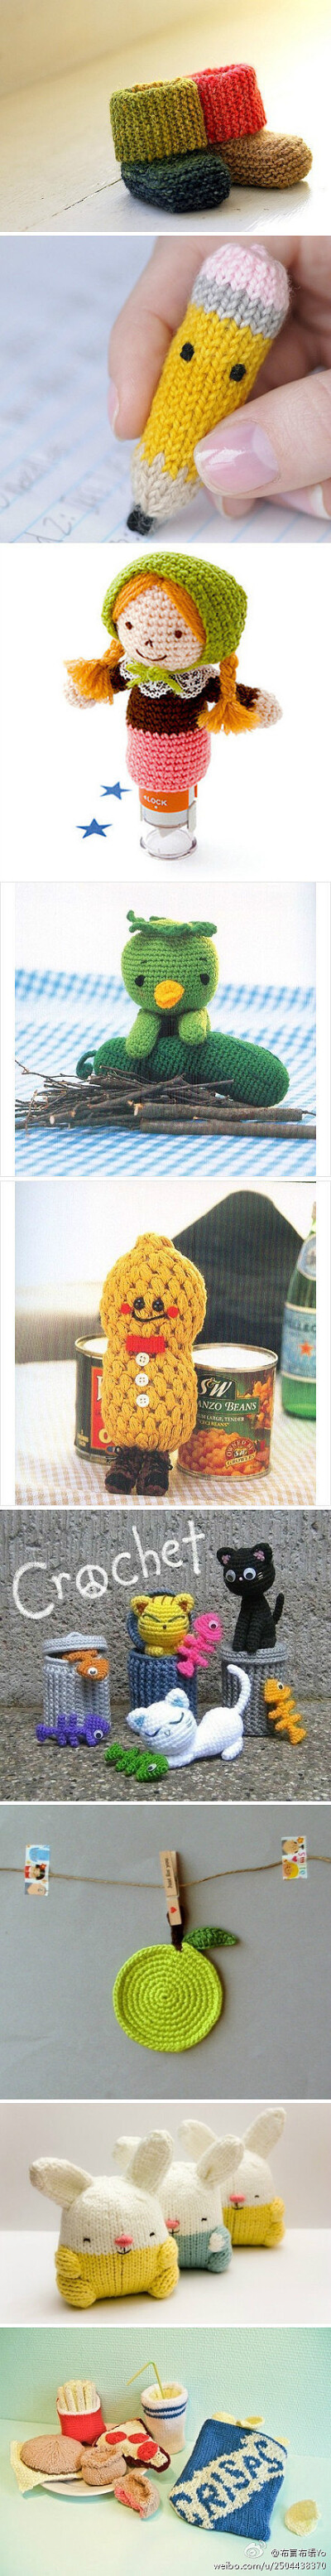 很有爱的编织。。